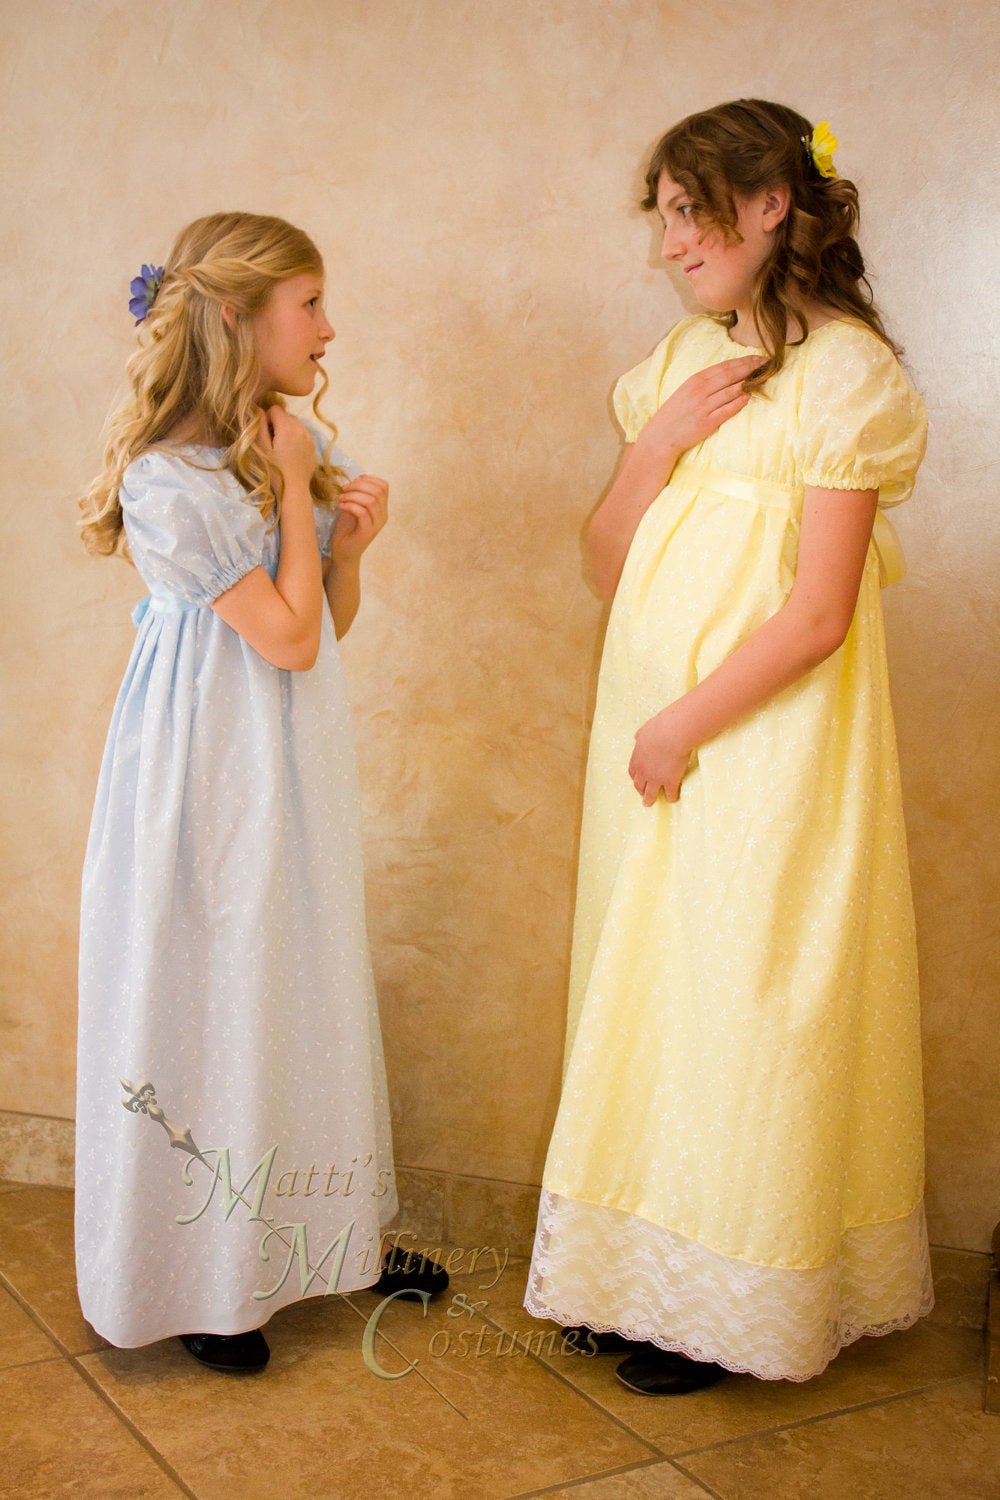 Eyelet Regency Jane Austen Girl Childrens Ball Gown Dress CUSTOM your color choice